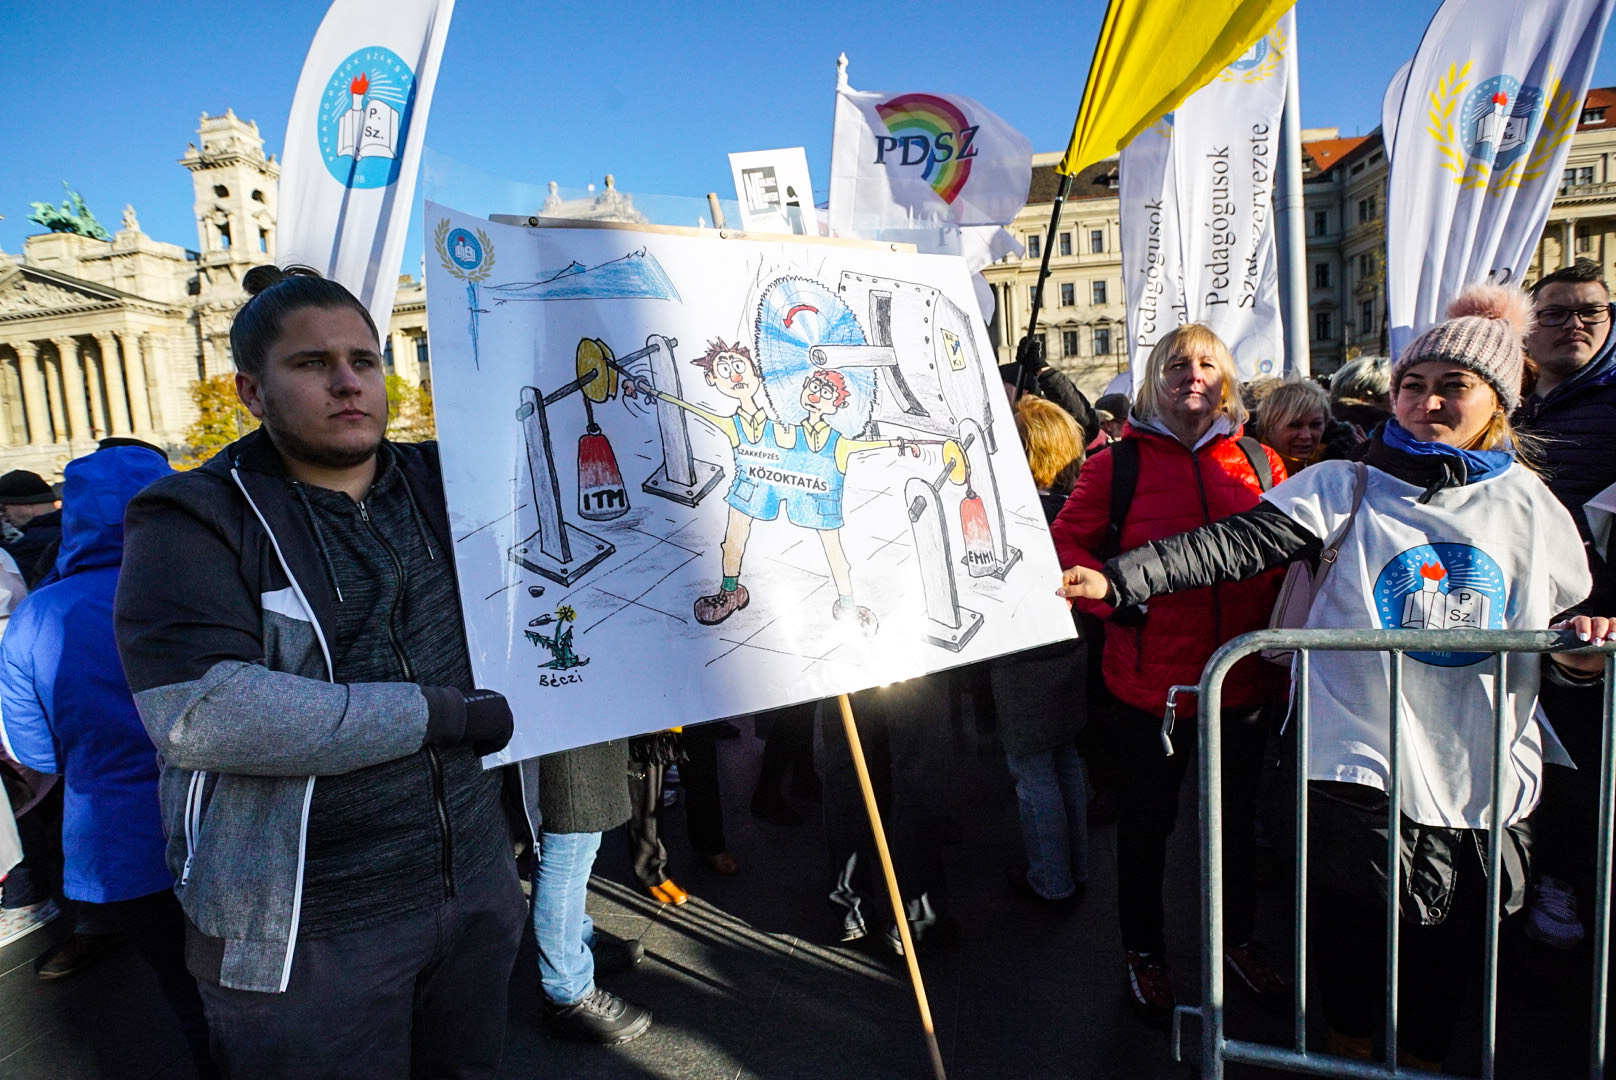 Több ezer pedagógus követeli, hogy a kormány fejezze be a közoktatás lezüllesztését, márciusban munkabeszüntetés jöhet